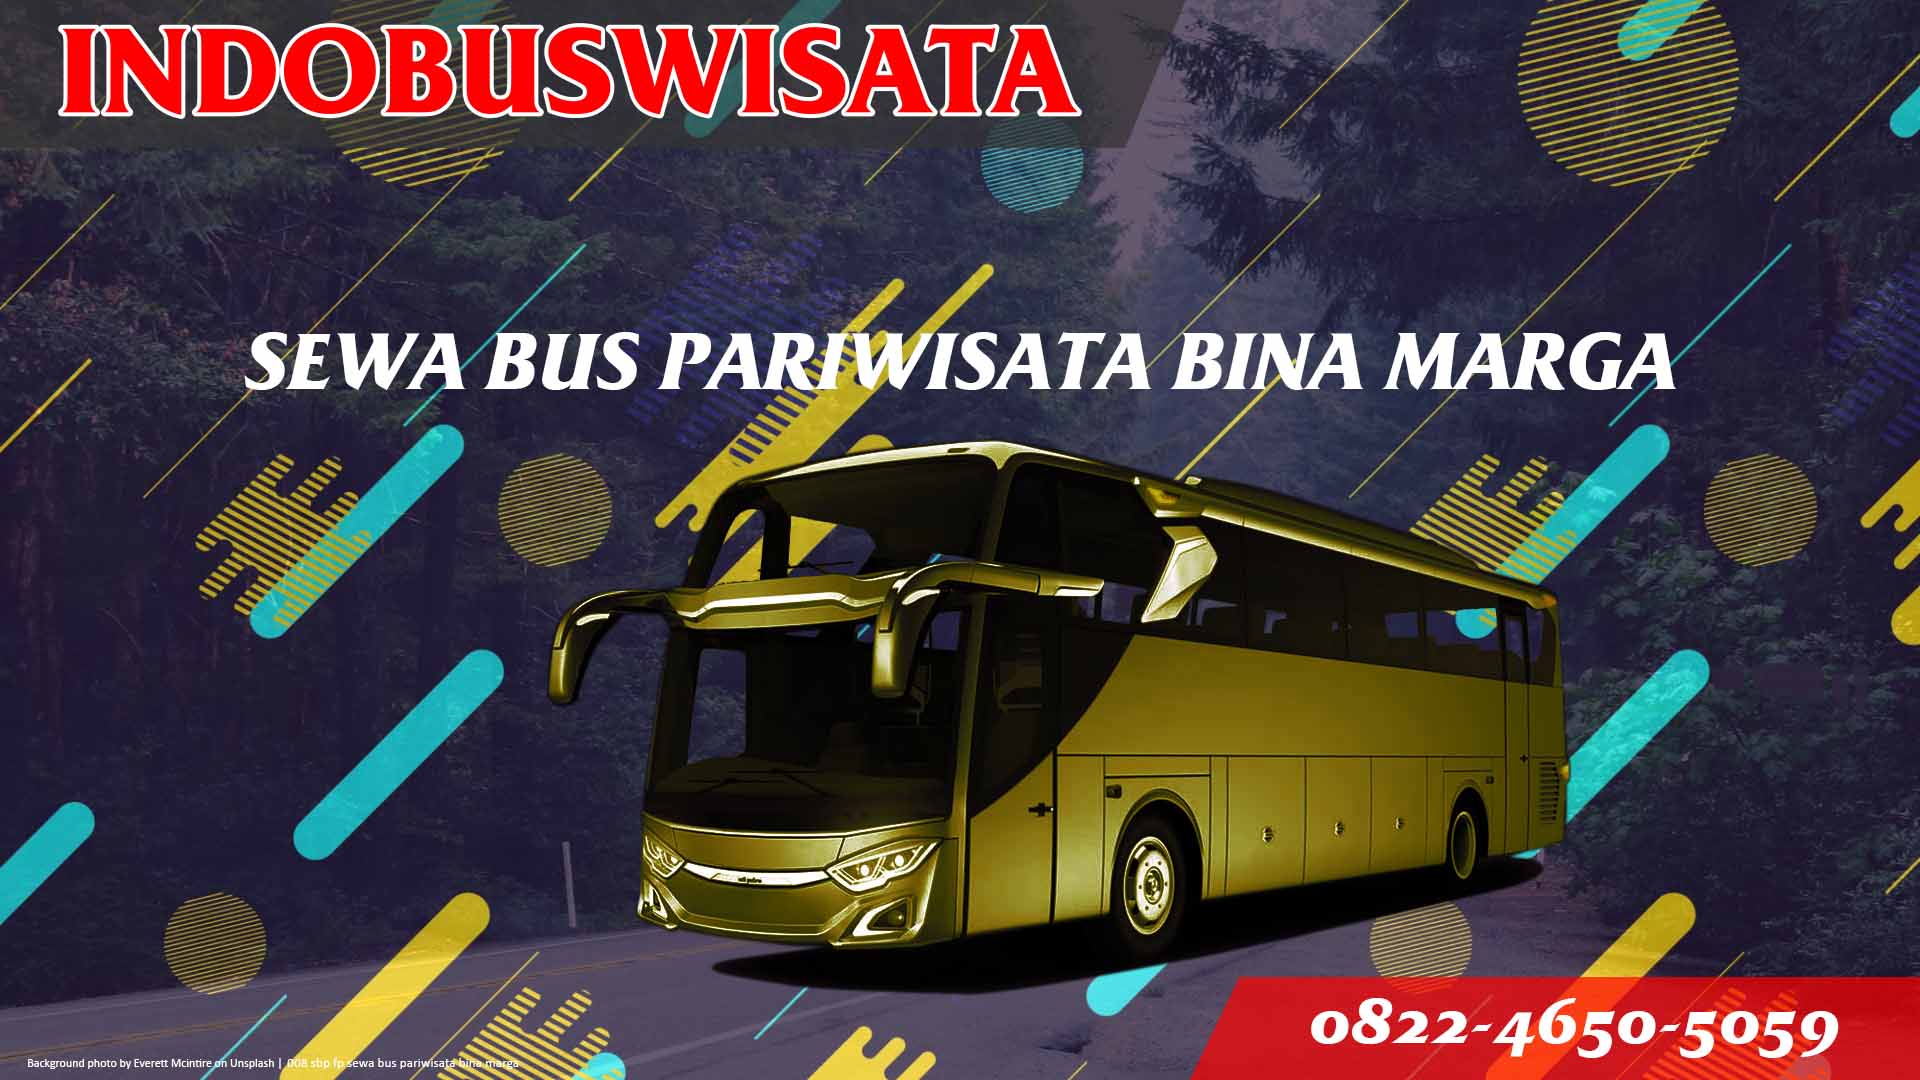 008 Sbp Fp Sewa Bus Pariwisata Bina Marga Indobuswisata